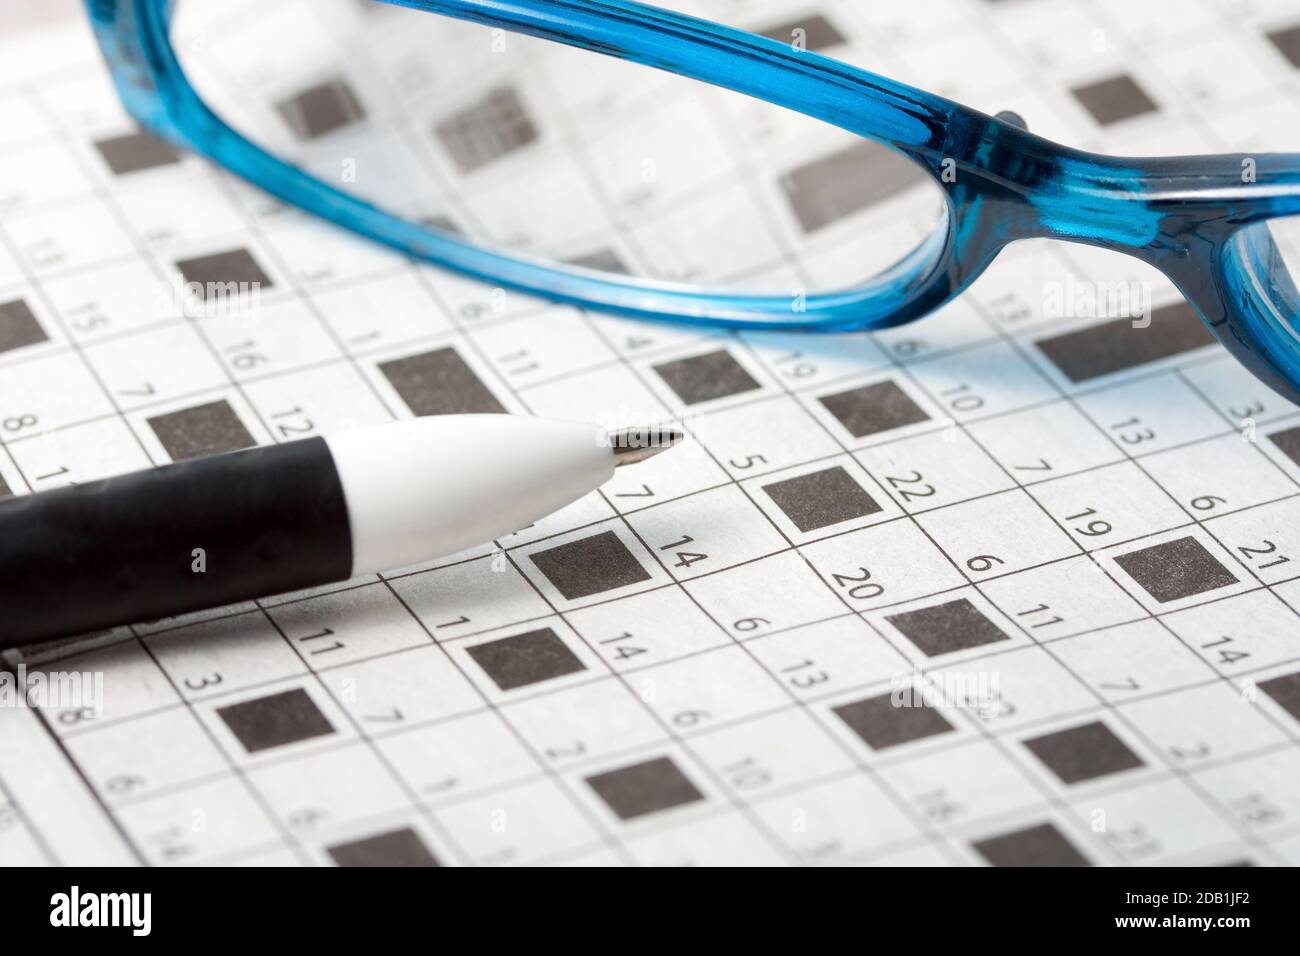 lunettes crayon sur fond de puzzle à mots croisés Photo Stock - Alamy